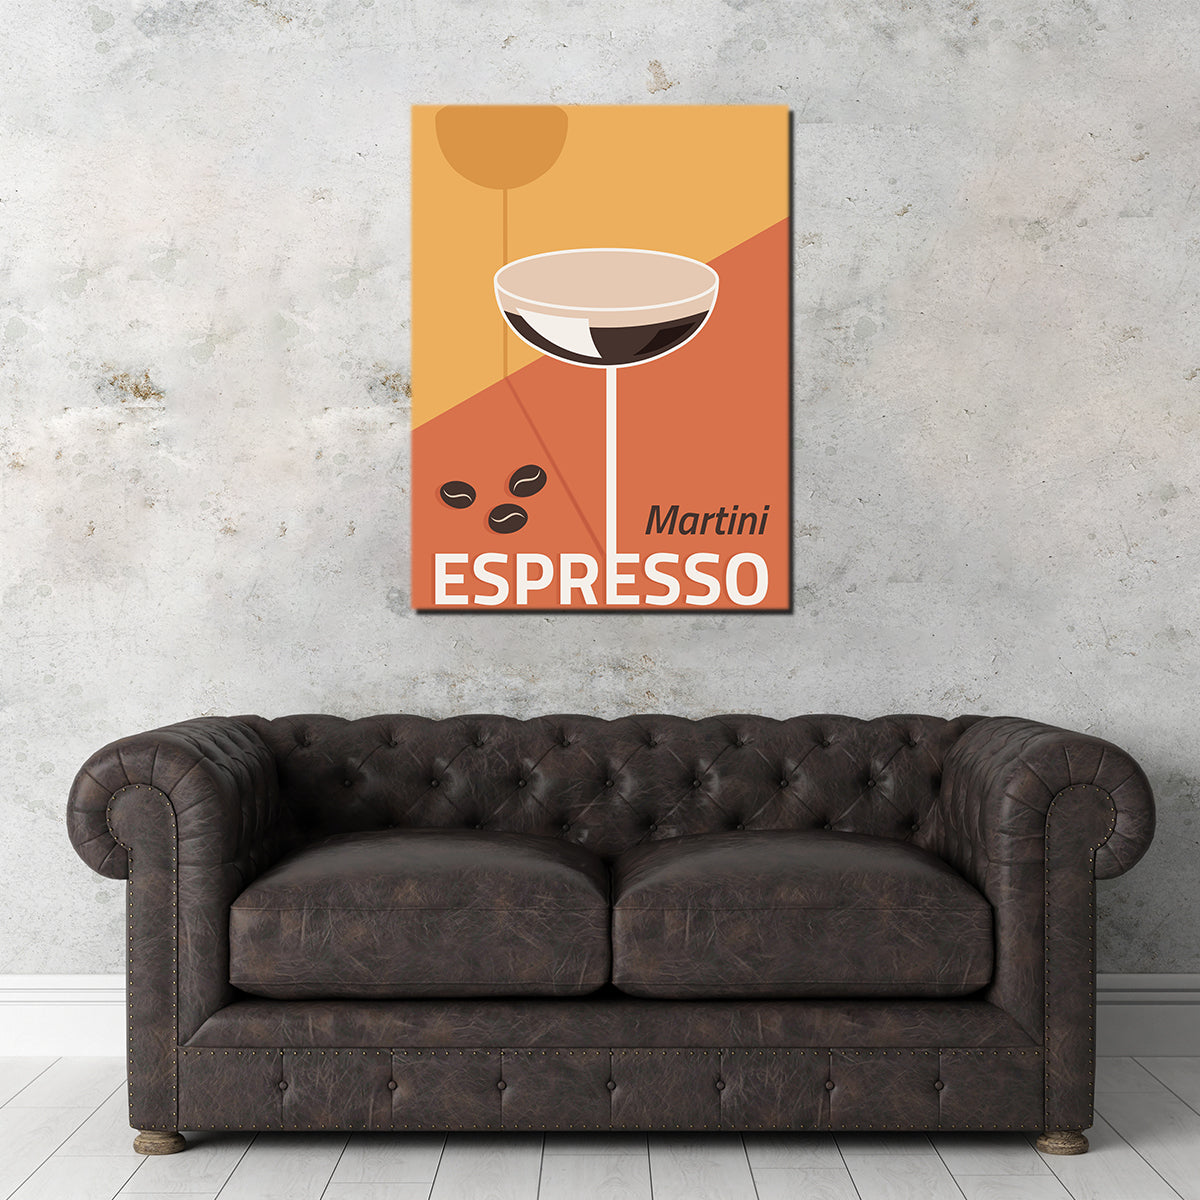 Martini Espresso Drink